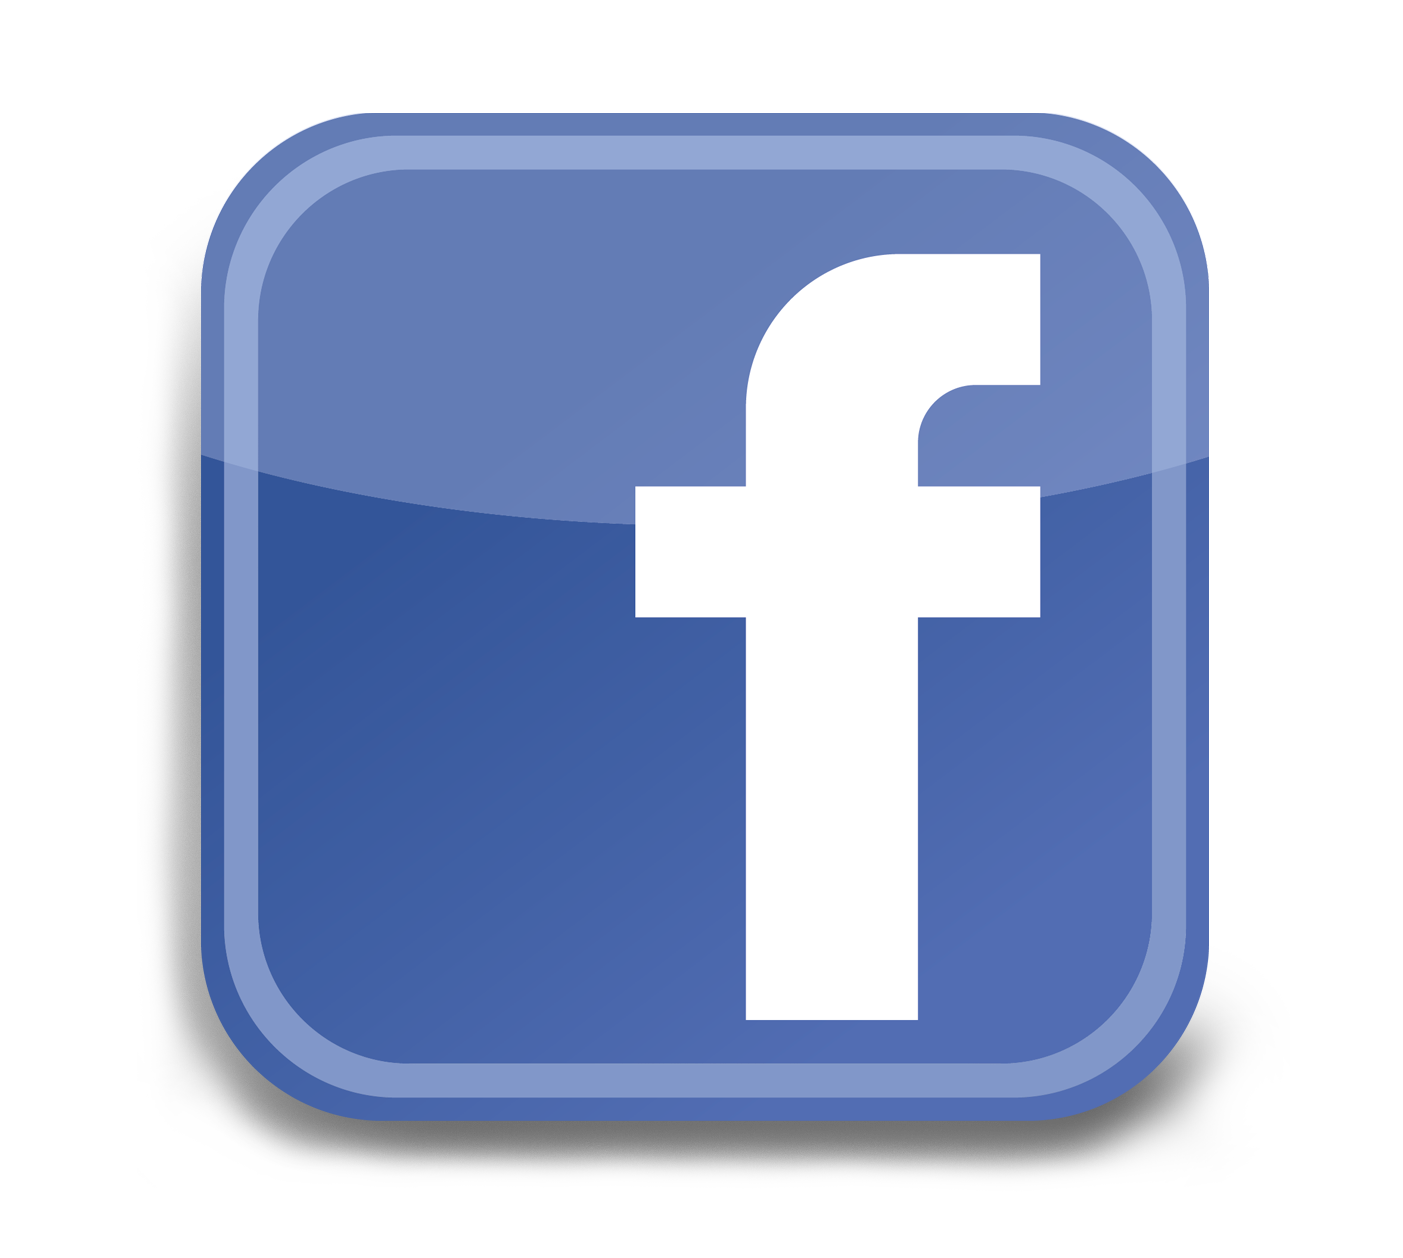 Résultat de recherche d'images pour "logo facebook png"